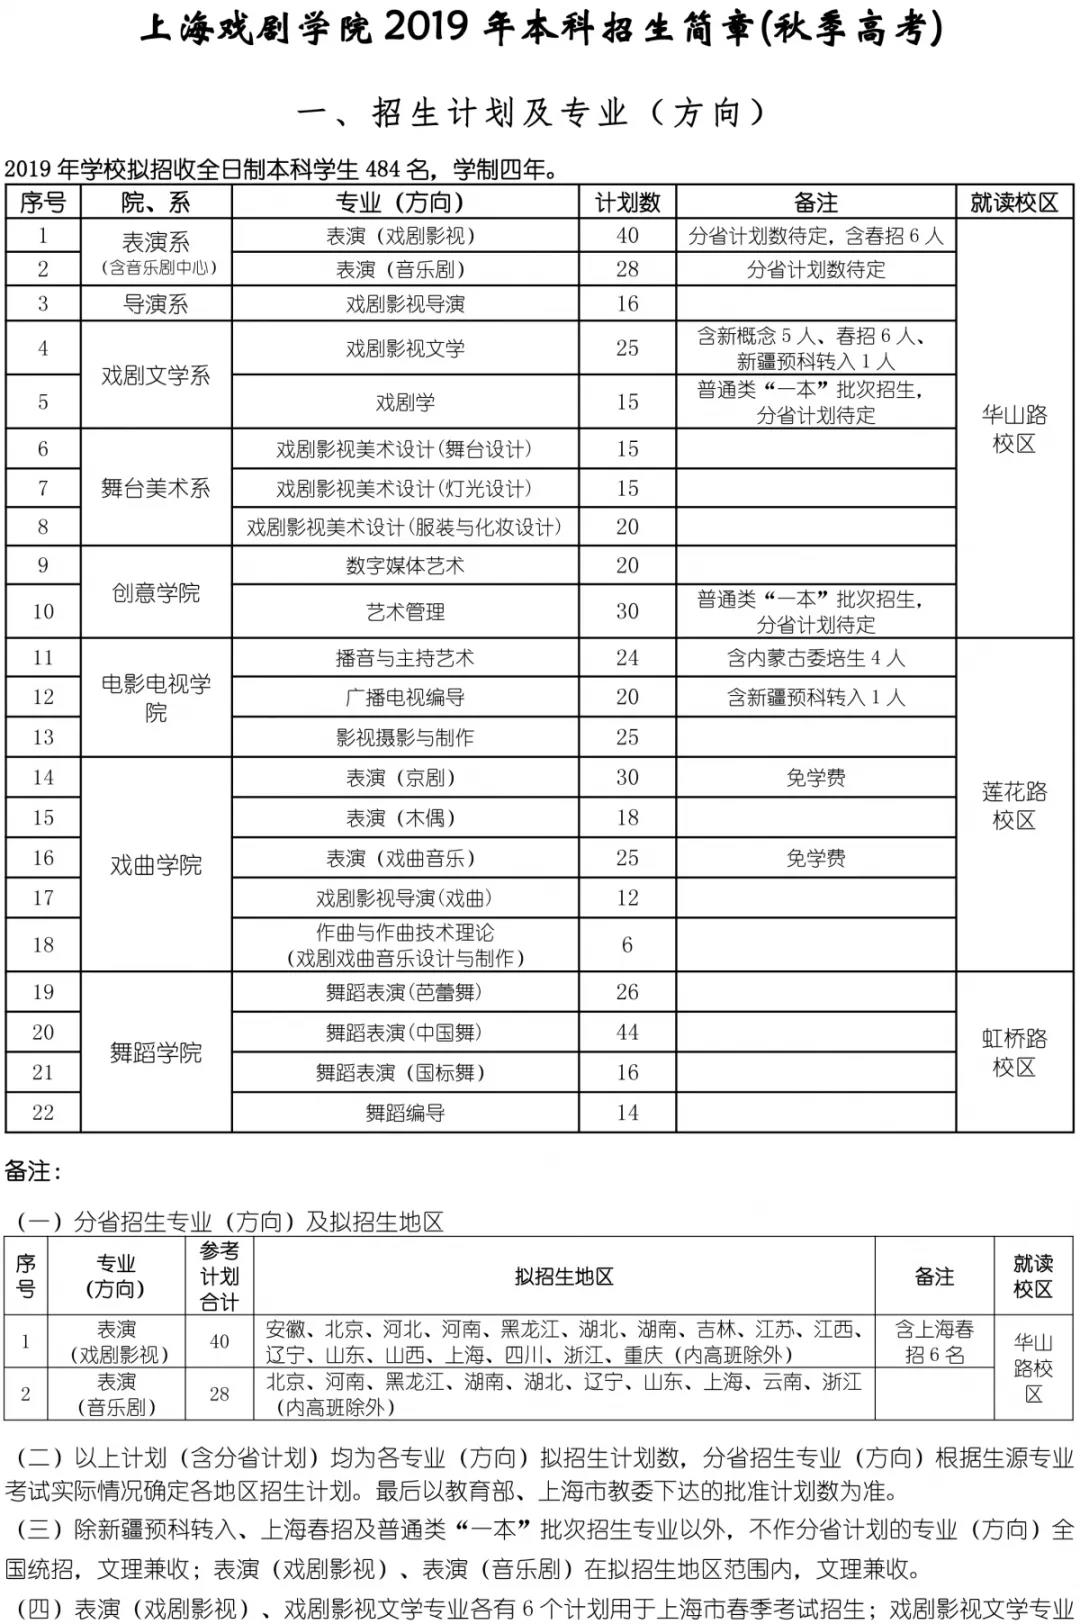 上海戏剧学院2019招生简章1